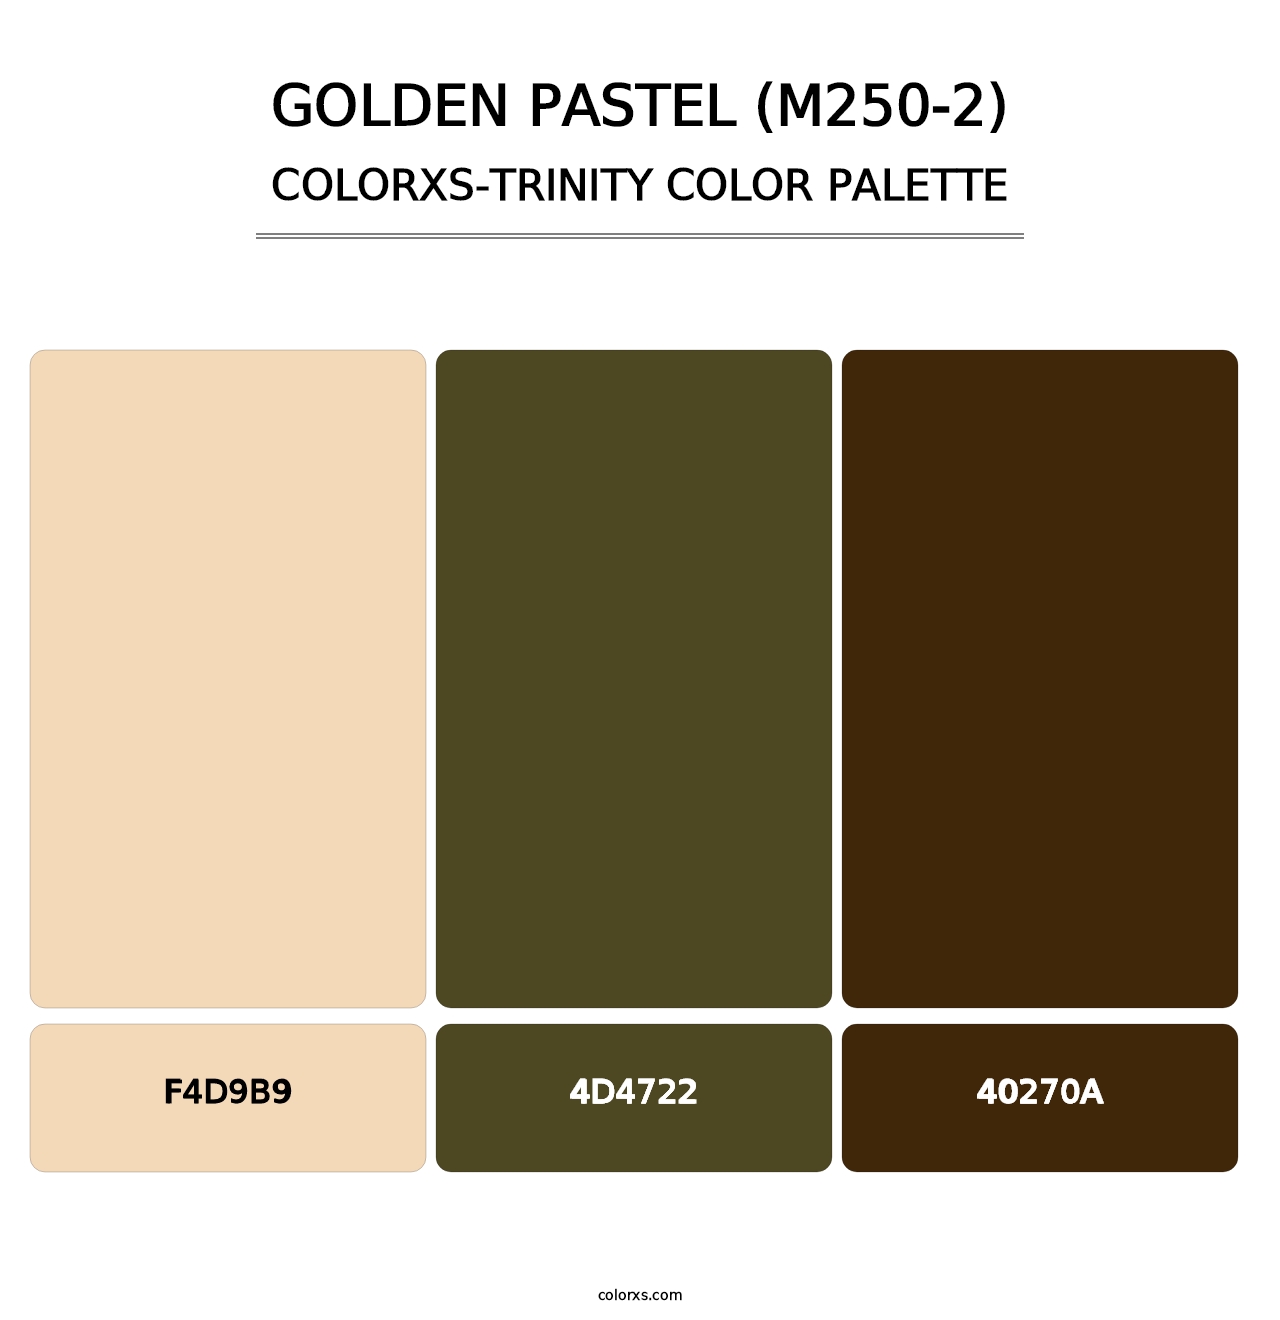 Golden Pastel (M250-2) - Colorxs Trinity Palette